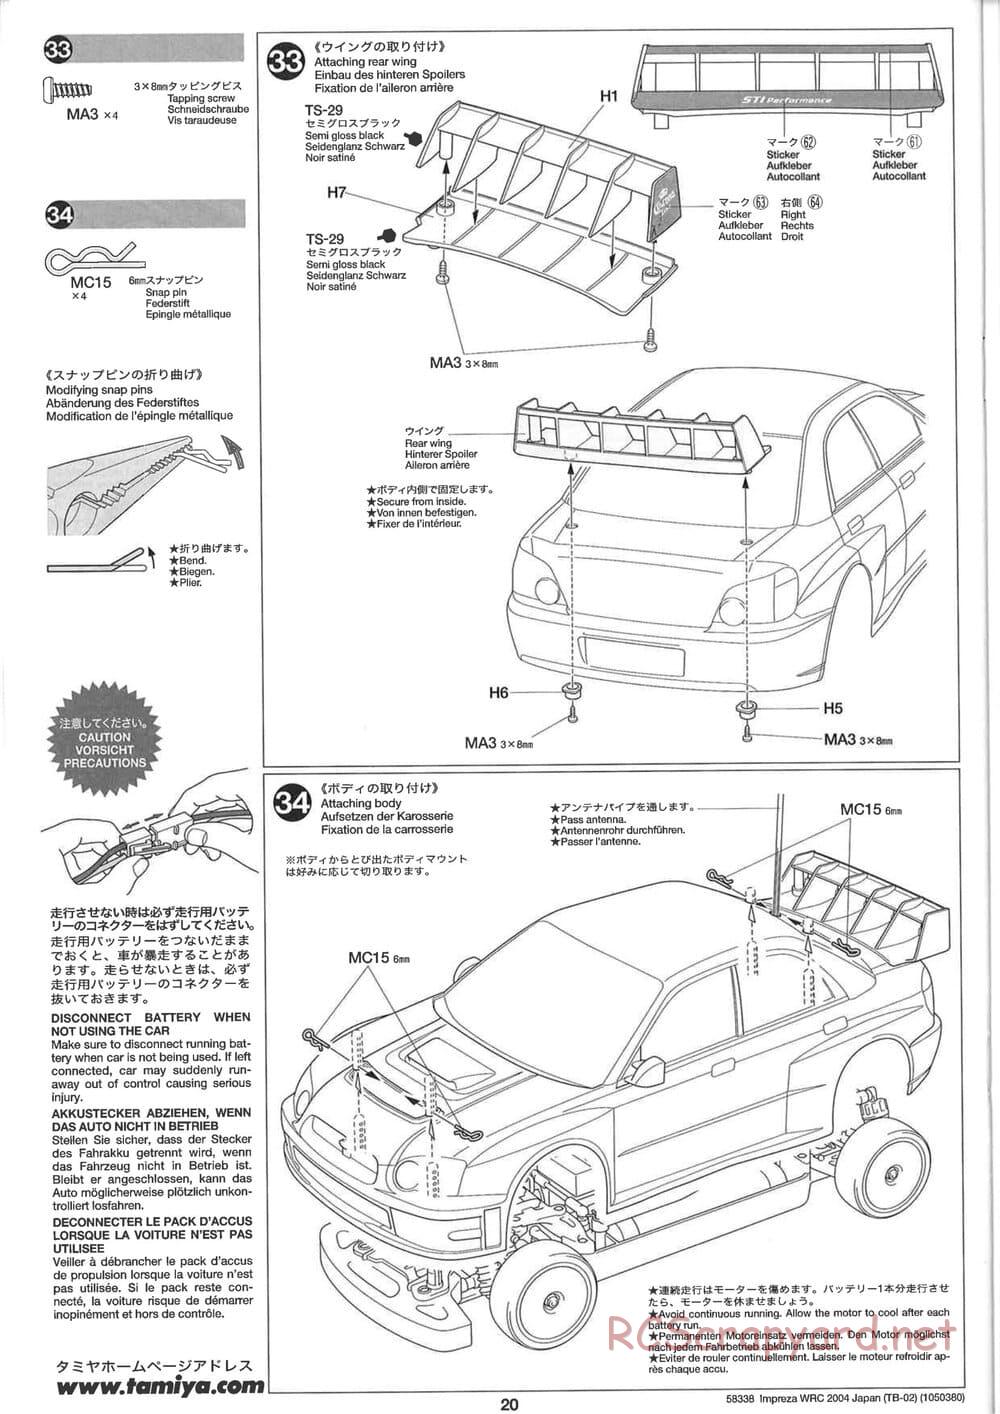 Tamiya - Subaru Impreza WRC 2004 Rally Japan - TB-02 Chassis - Manual - Page 20